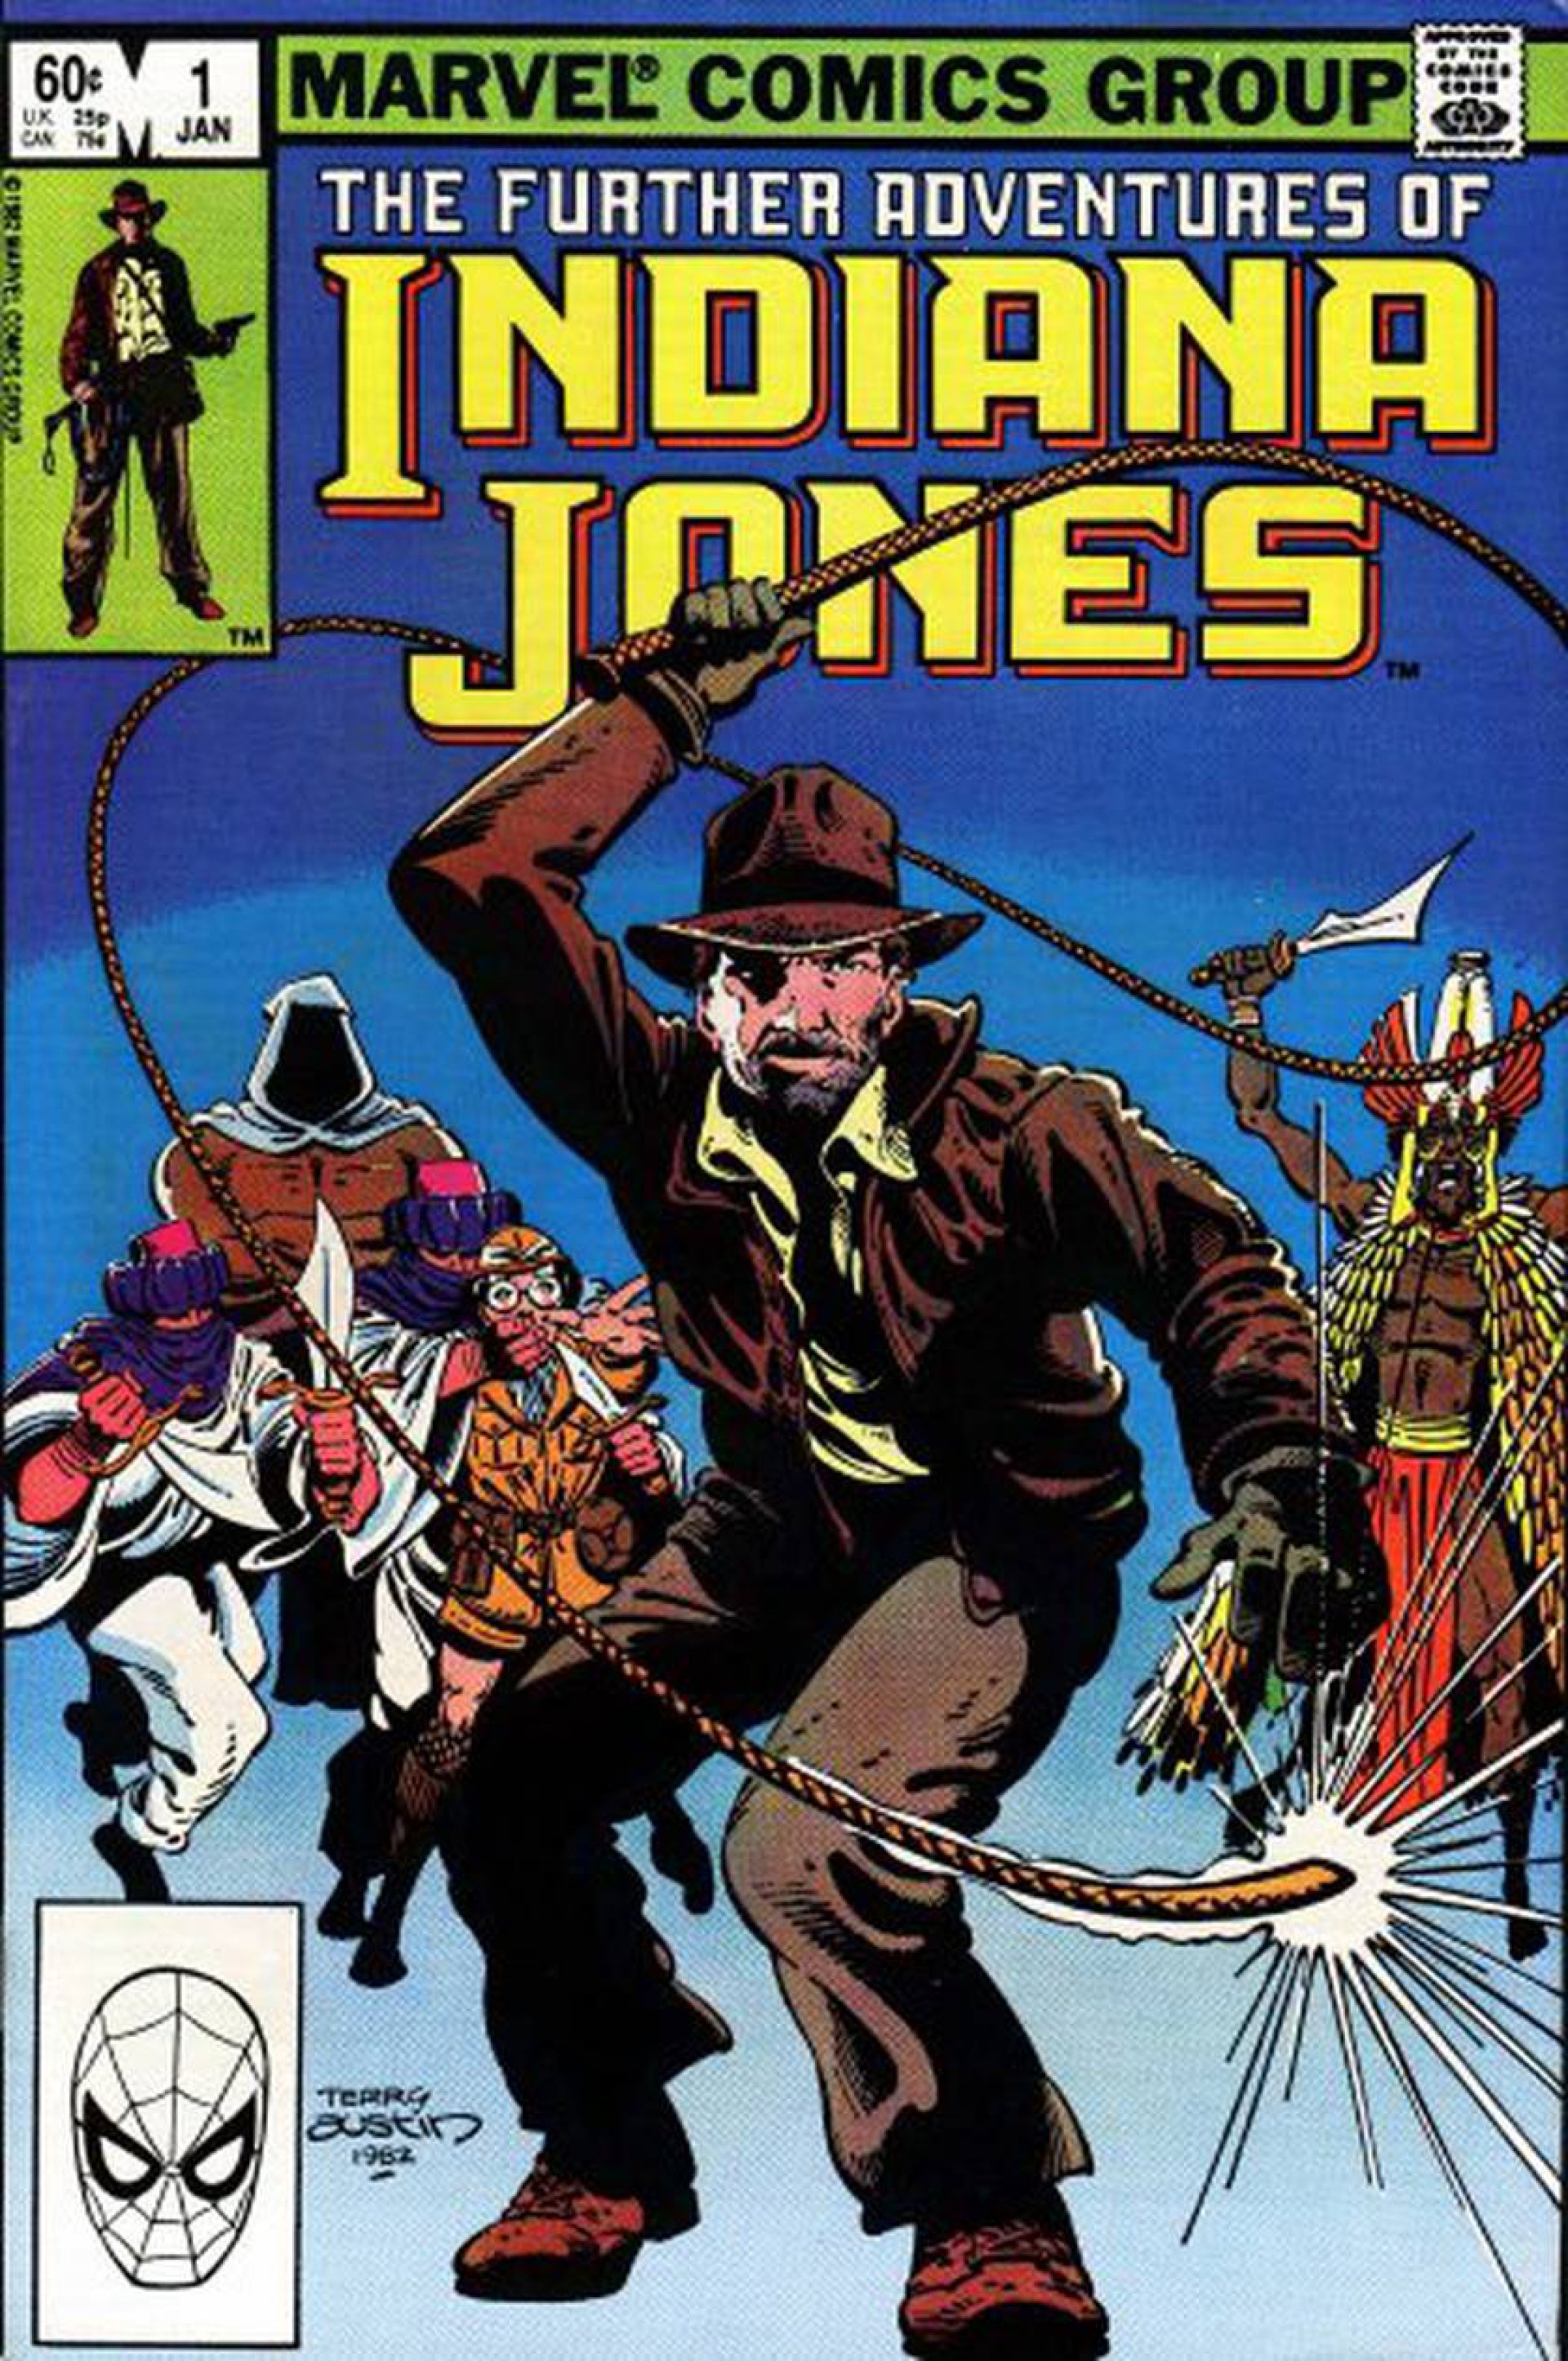 Nostálgico, 5º capítulo de 'Indiana Jones' traz reflexões sobre o